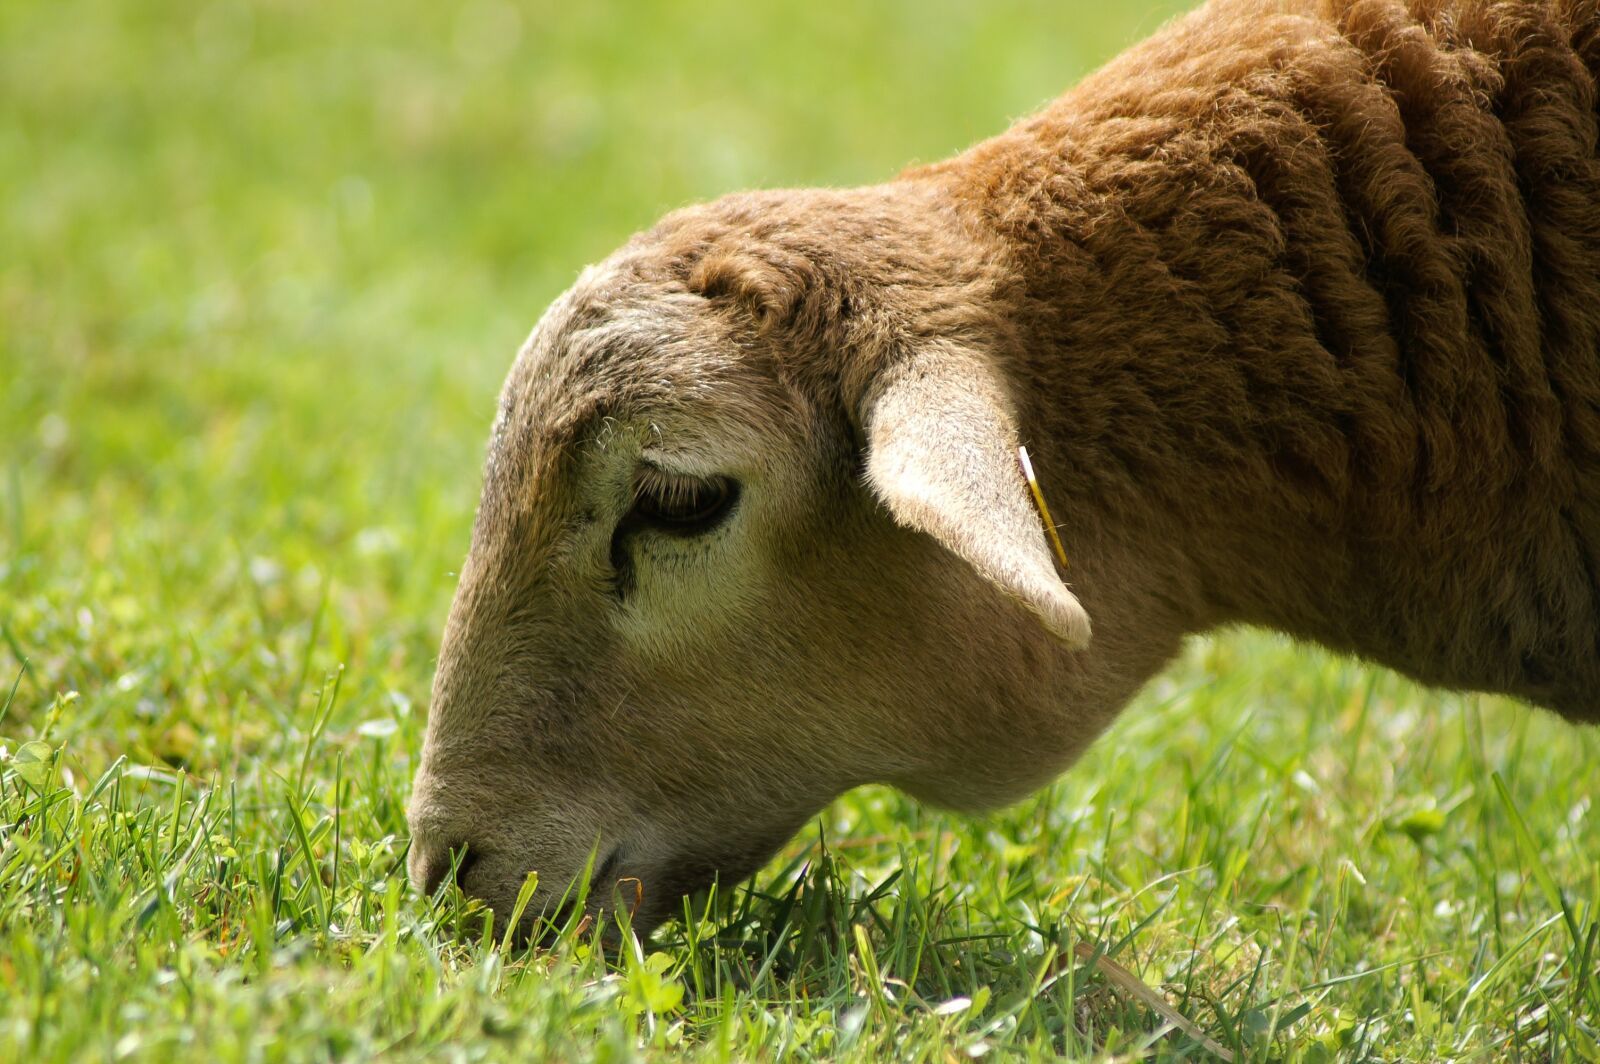 KONICA MINOLTA DYNAX 5D sample photo. Sheep, grass, green photography